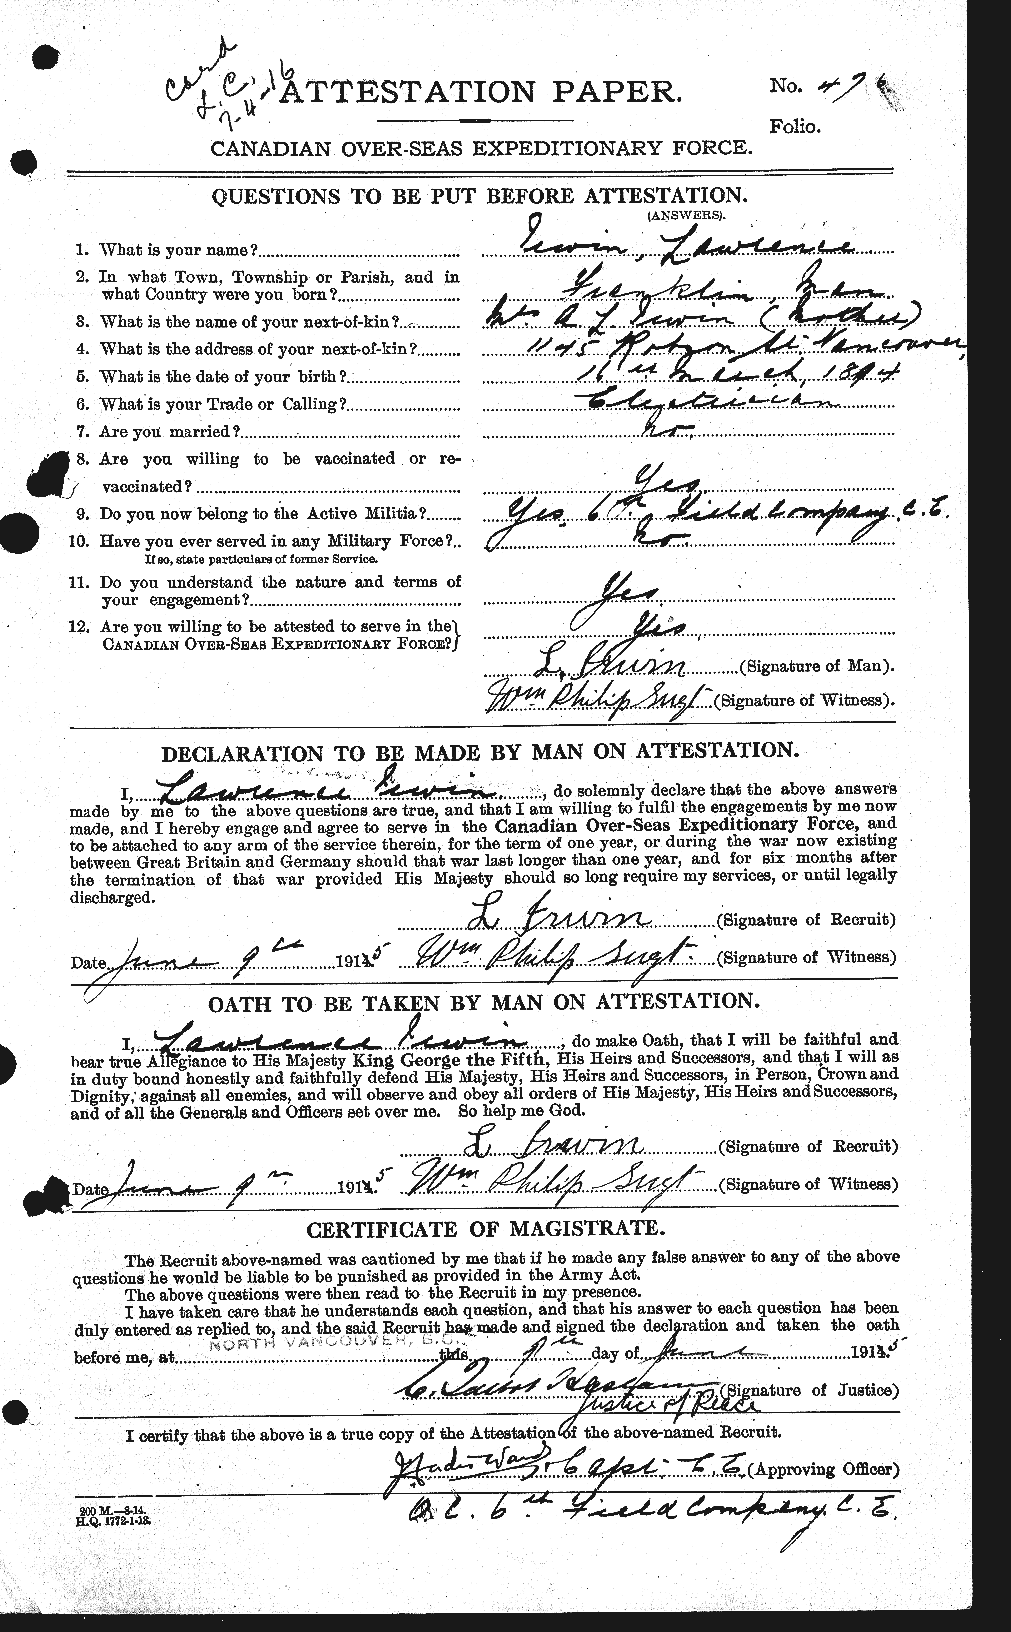 Dossiers du Personnel de la Première Guerre mondiale - CEC 412950a